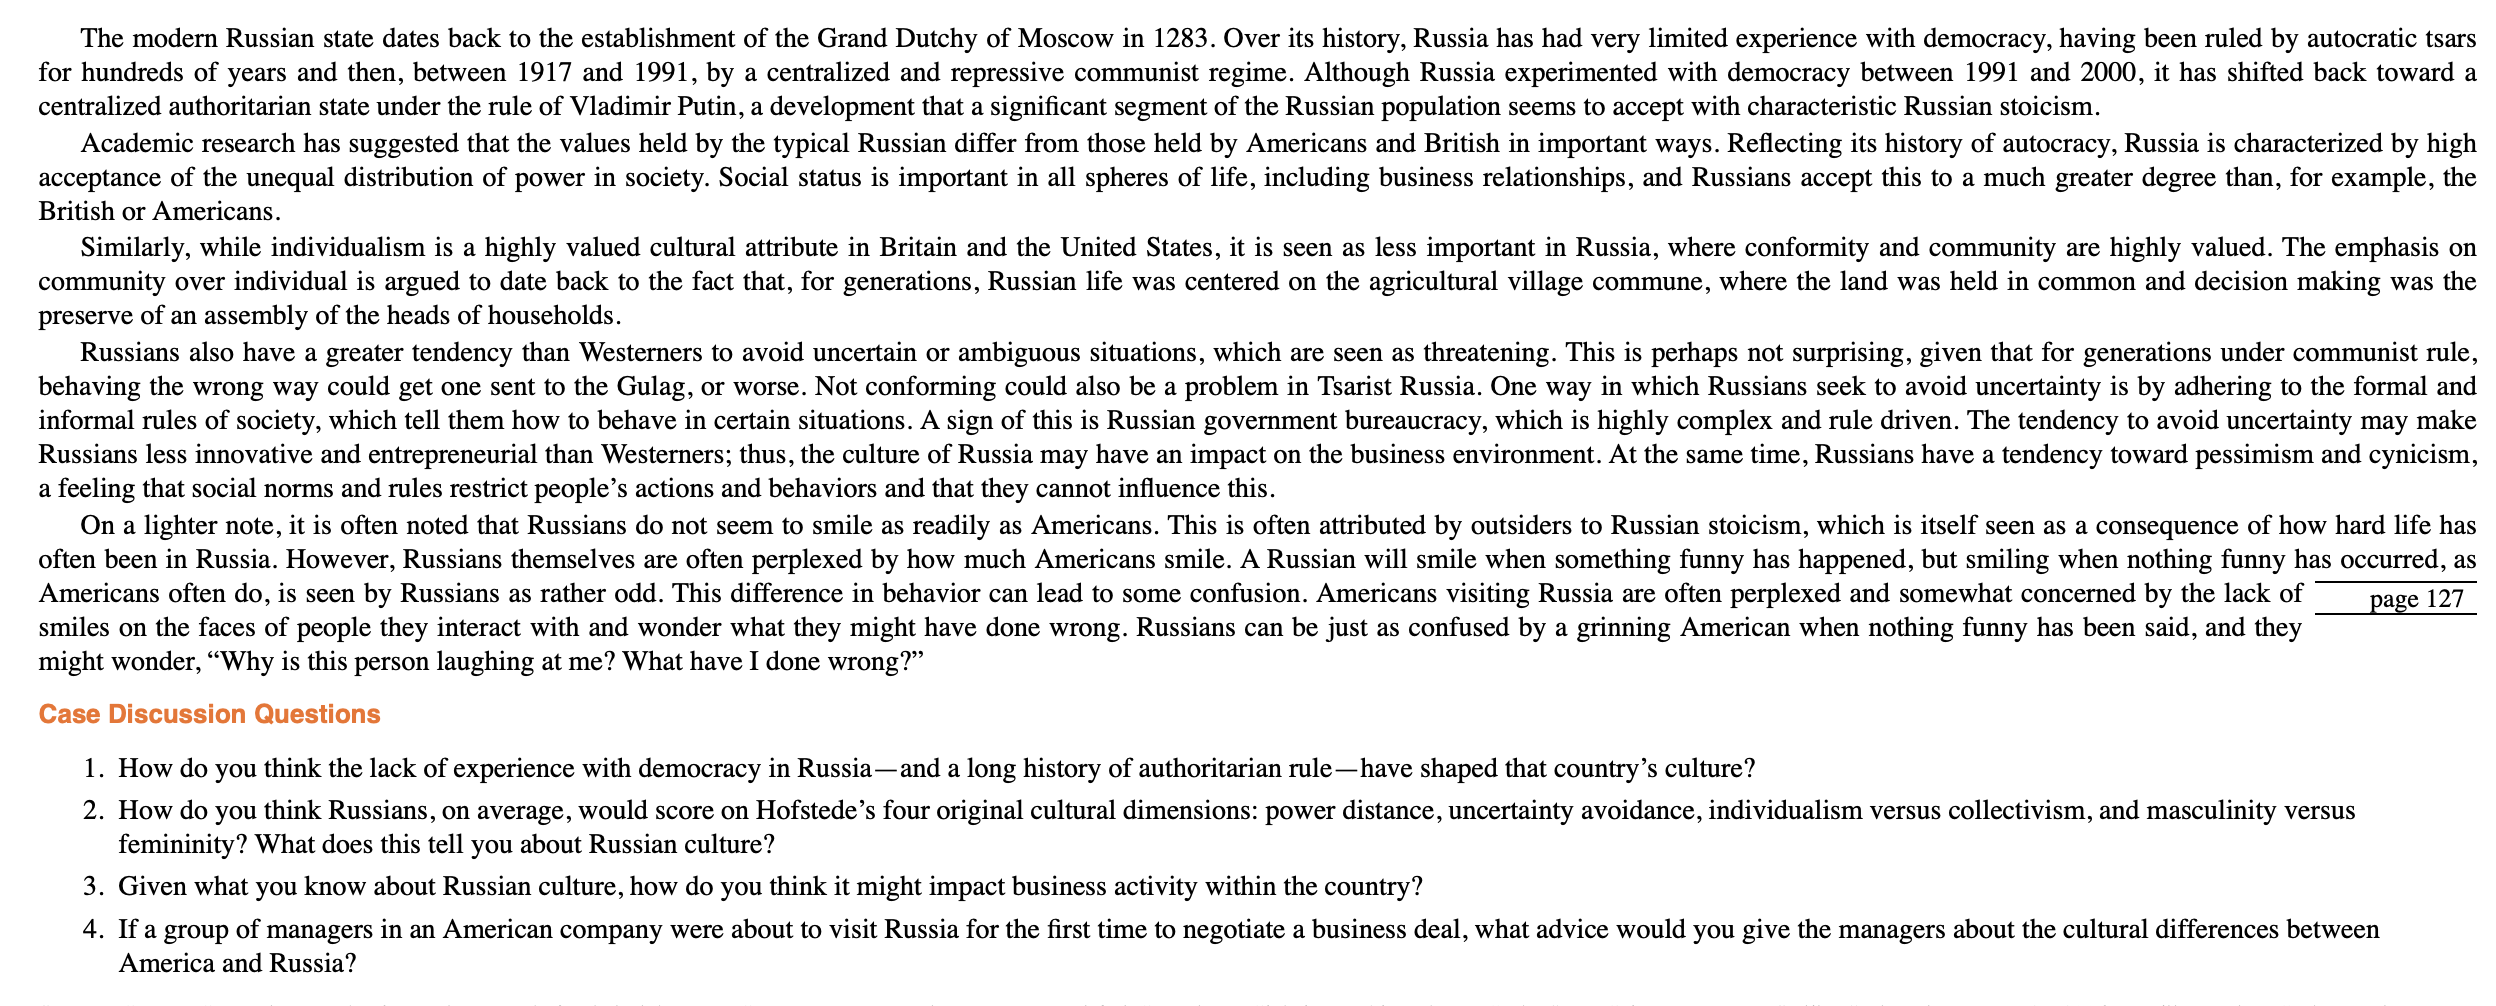 Russian Culture The great British statesman, Winston | Chegg.com